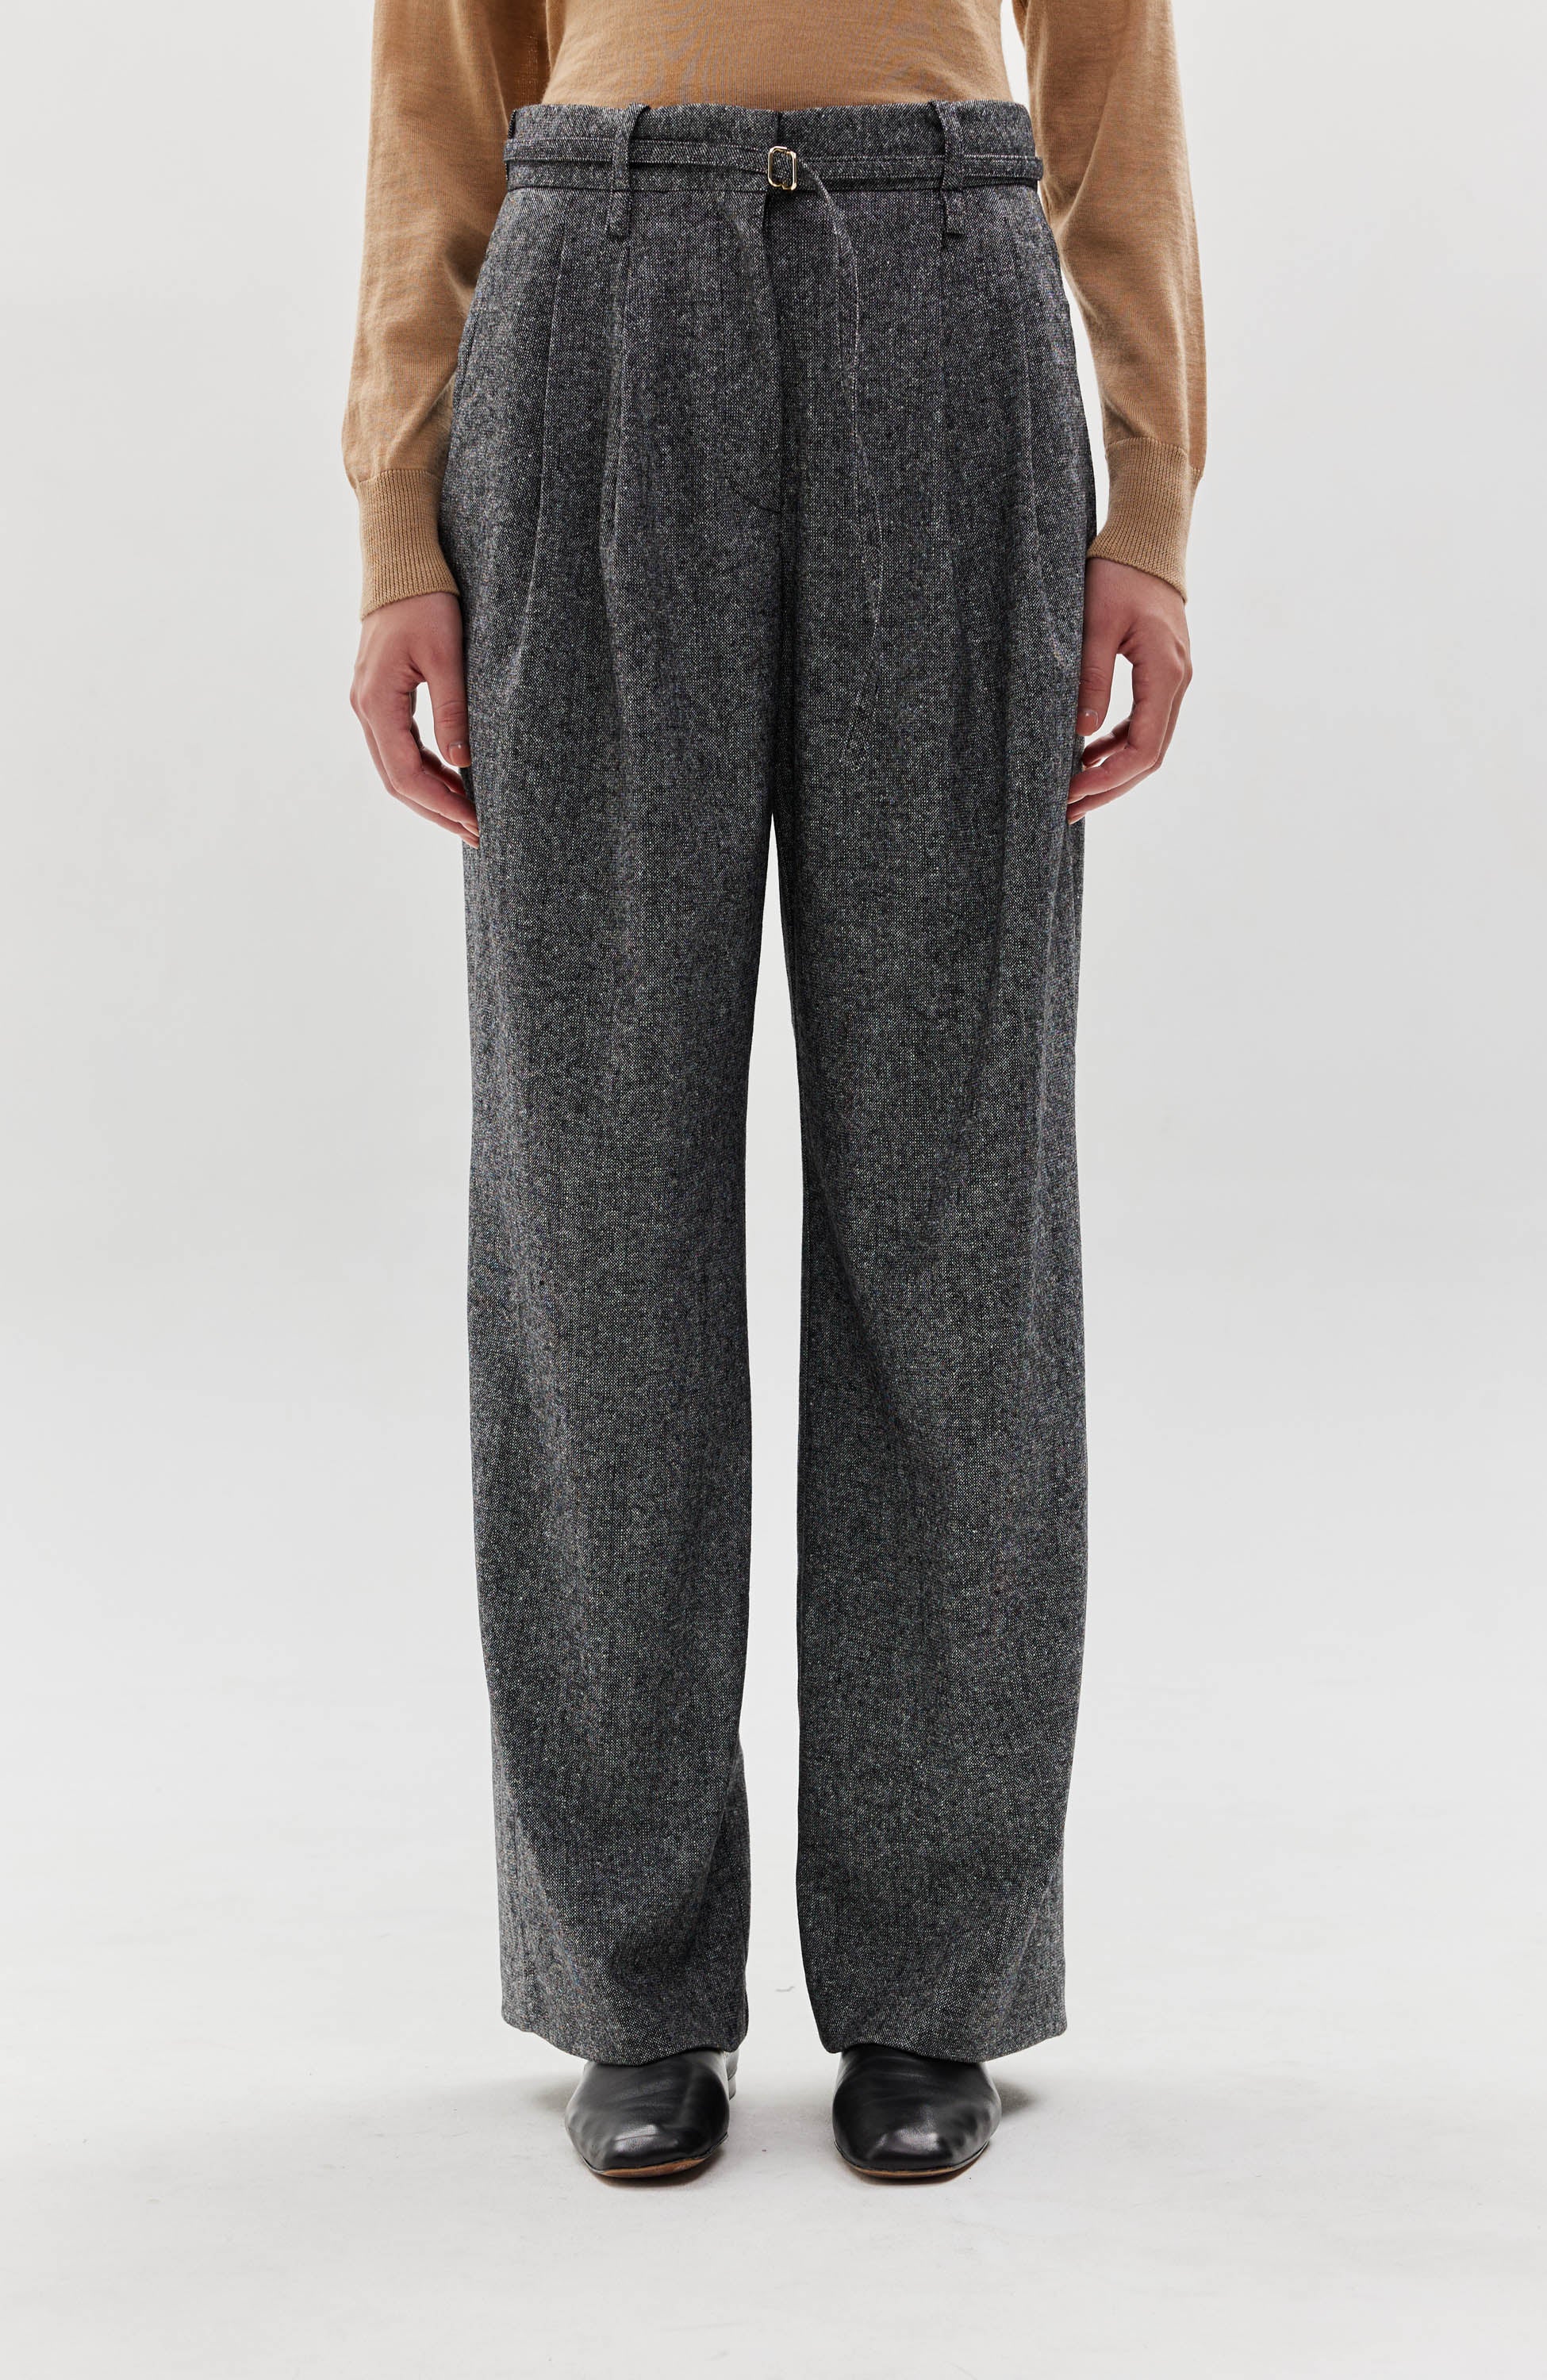 Erika Cavallini straight flannel trousers